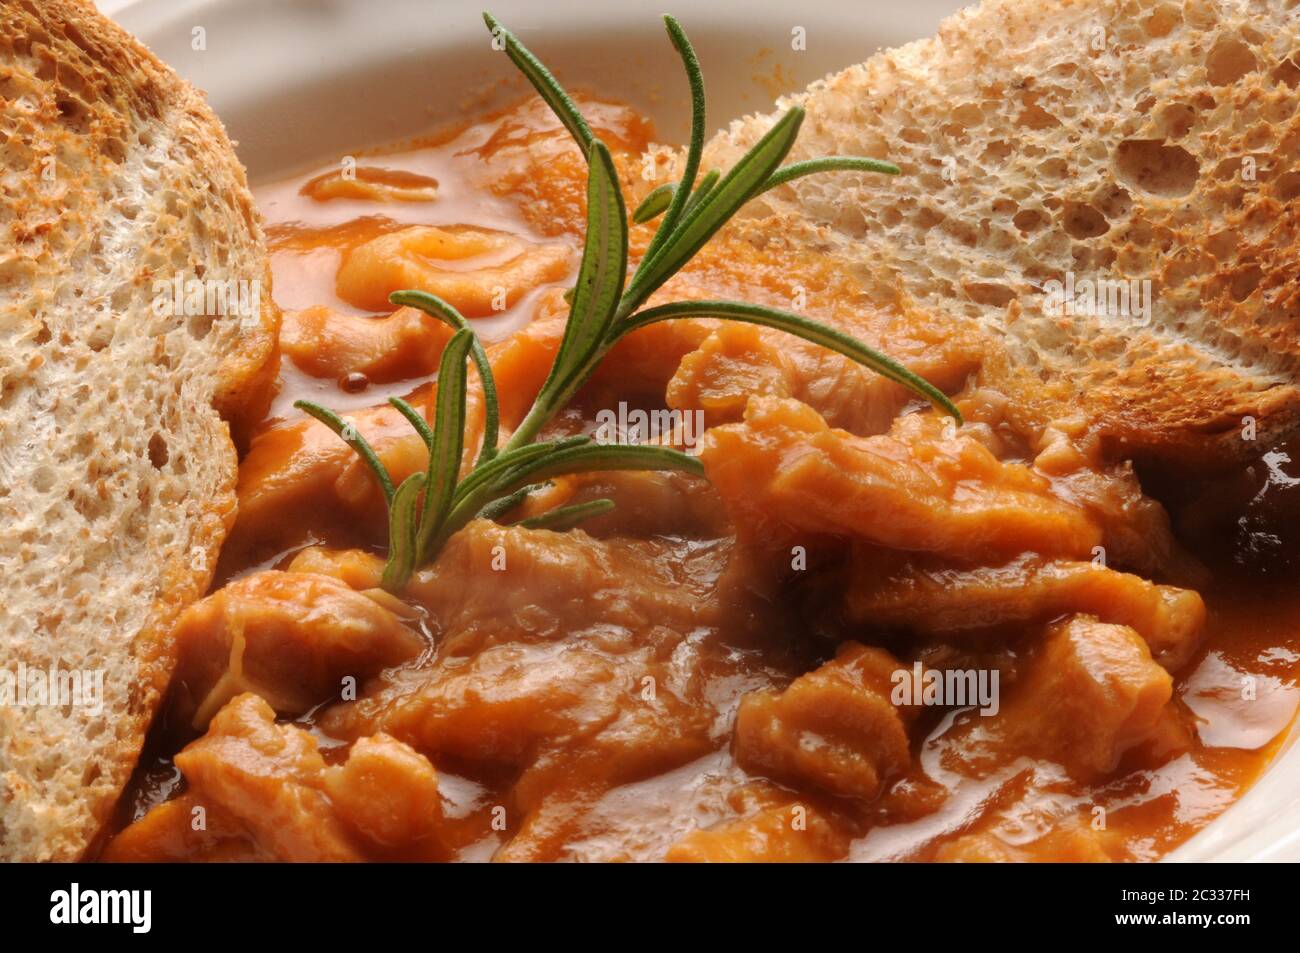 Gros plan des tripes parmigiana avec des tranches de pain Banque D'Images